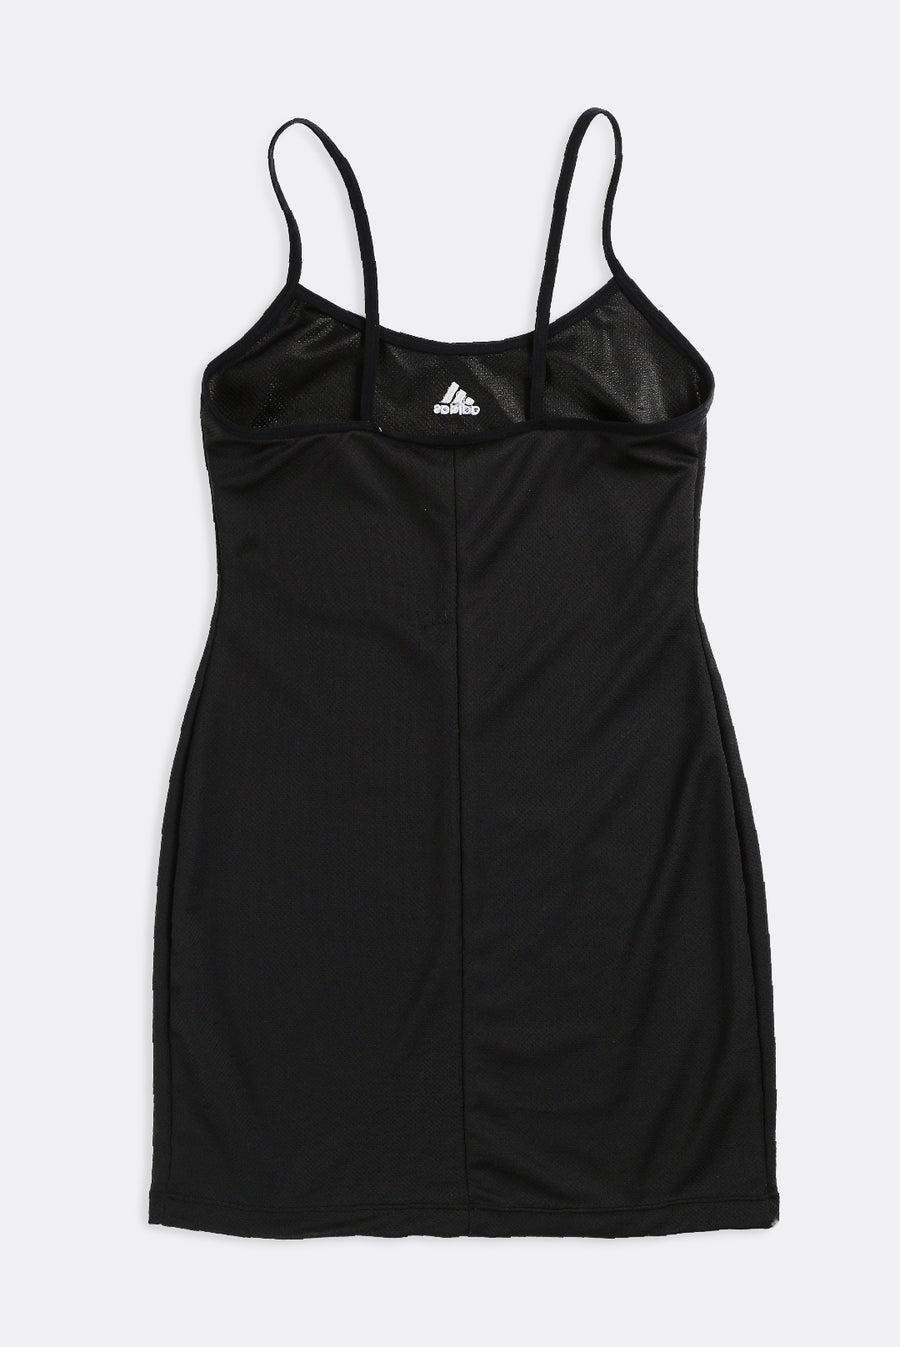 Rework Adidas Athletic Mini Dress - XS, S, M, L, XL